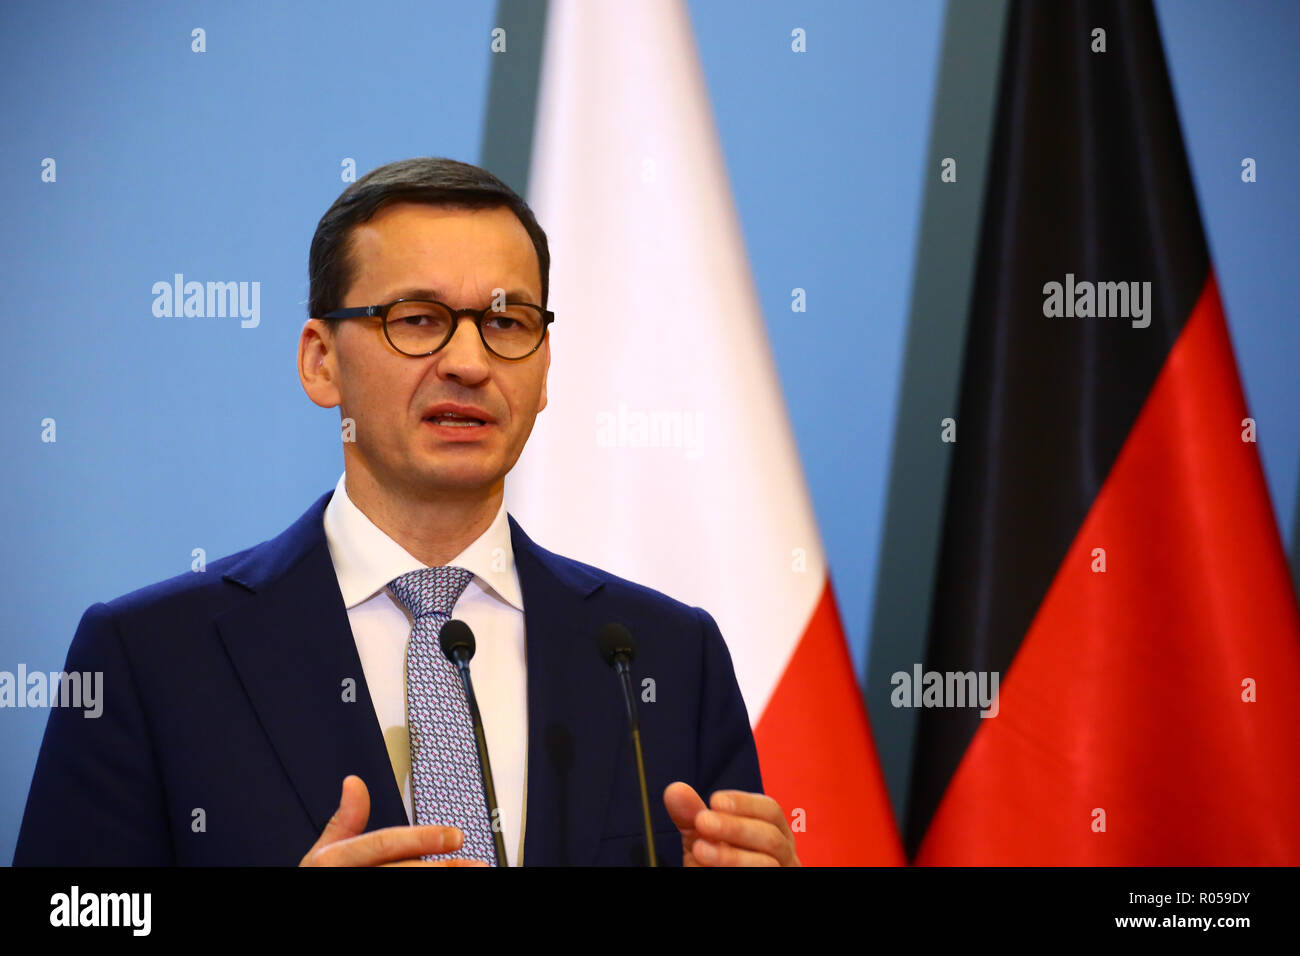 Varsovie, Pologne, 2 novembre 2018 : Premier Ministre Mateusz Morawiecki a tenu une conférence de presse conjointe avec la Chancelière Merkel après consultations gouvernementales germano-polonaise. ©Jake Ratz/Alamy Live News Banque D'Images